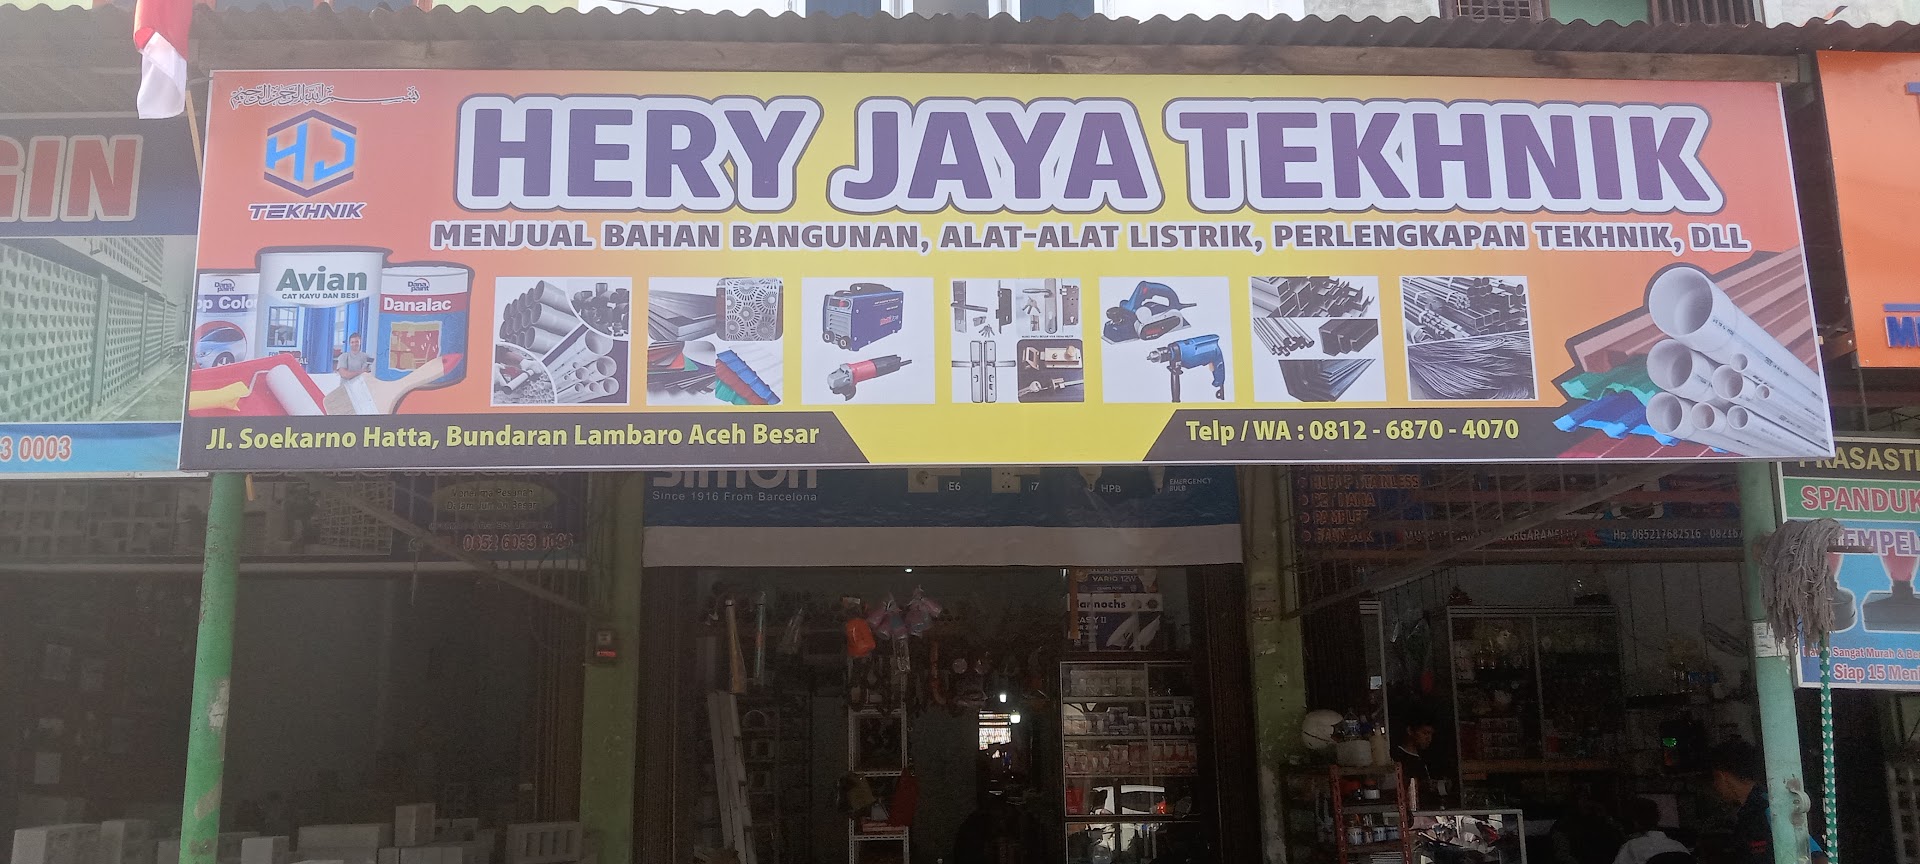 Toko Hery Jaya Tekhnik. Menjual Bahan Bangunan,cat Besi, Cat Tembok, Alat Listrik ,tekhnik Dll Photo